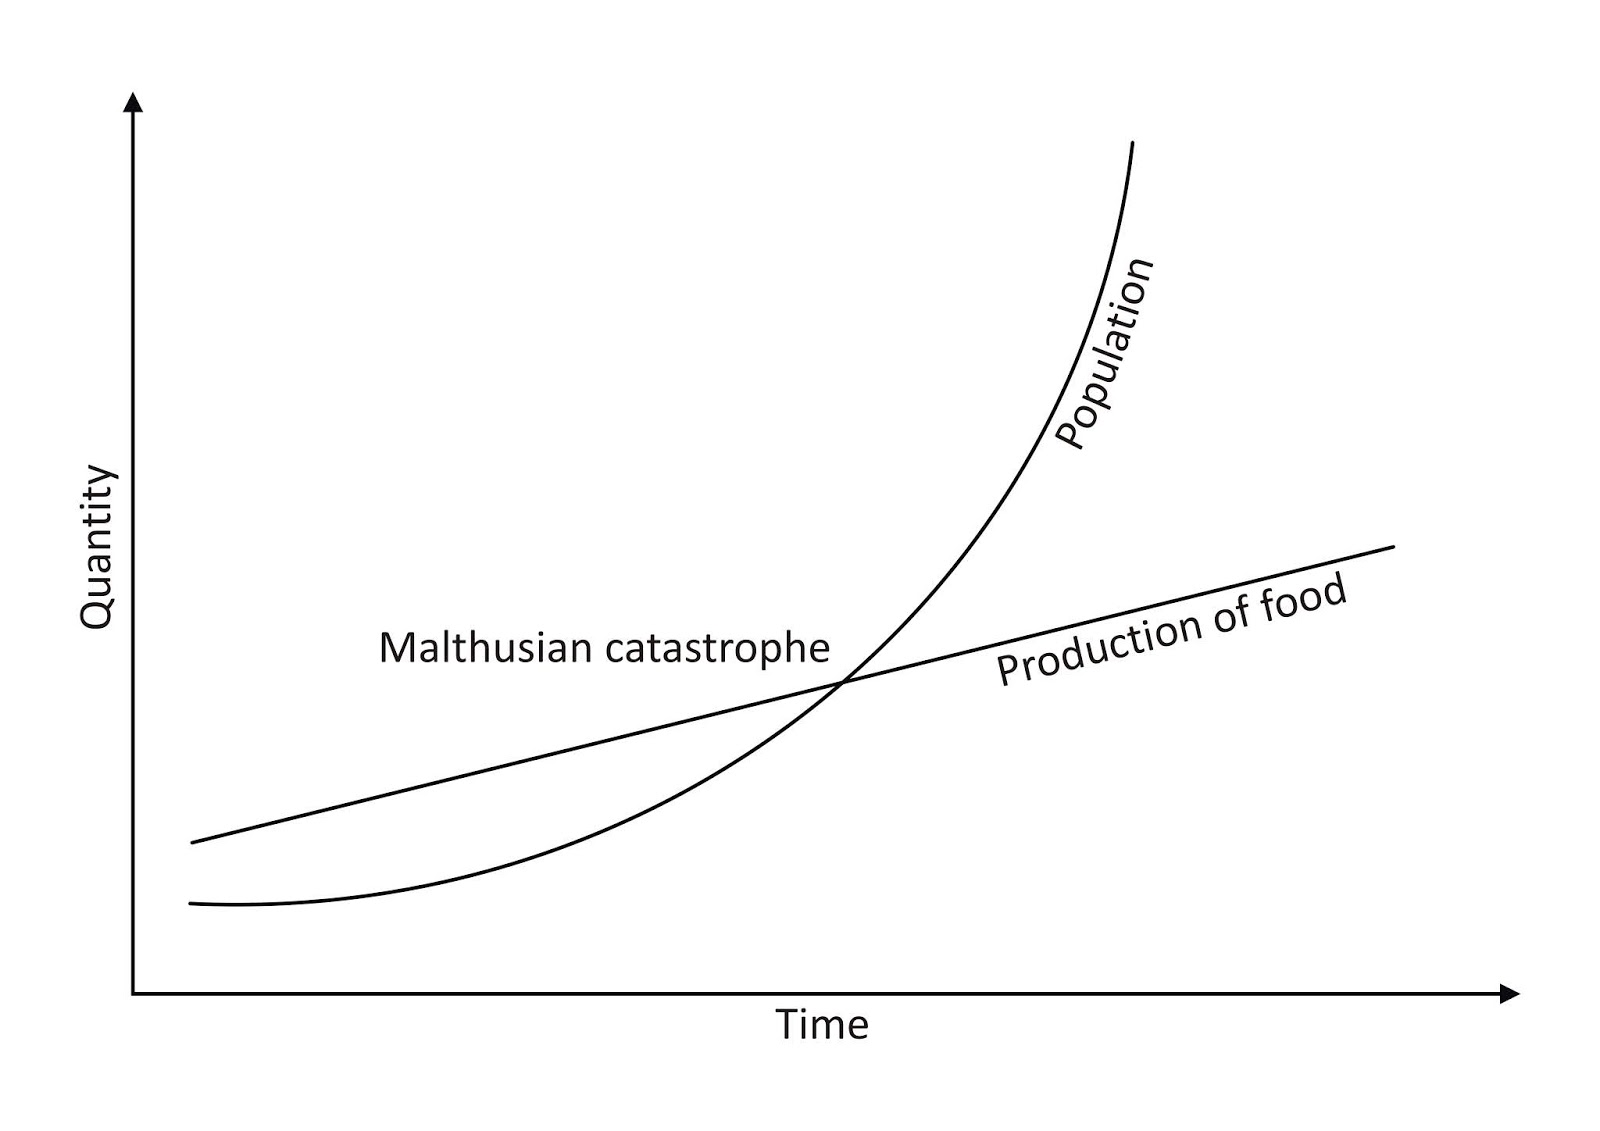 malthusian theory essay